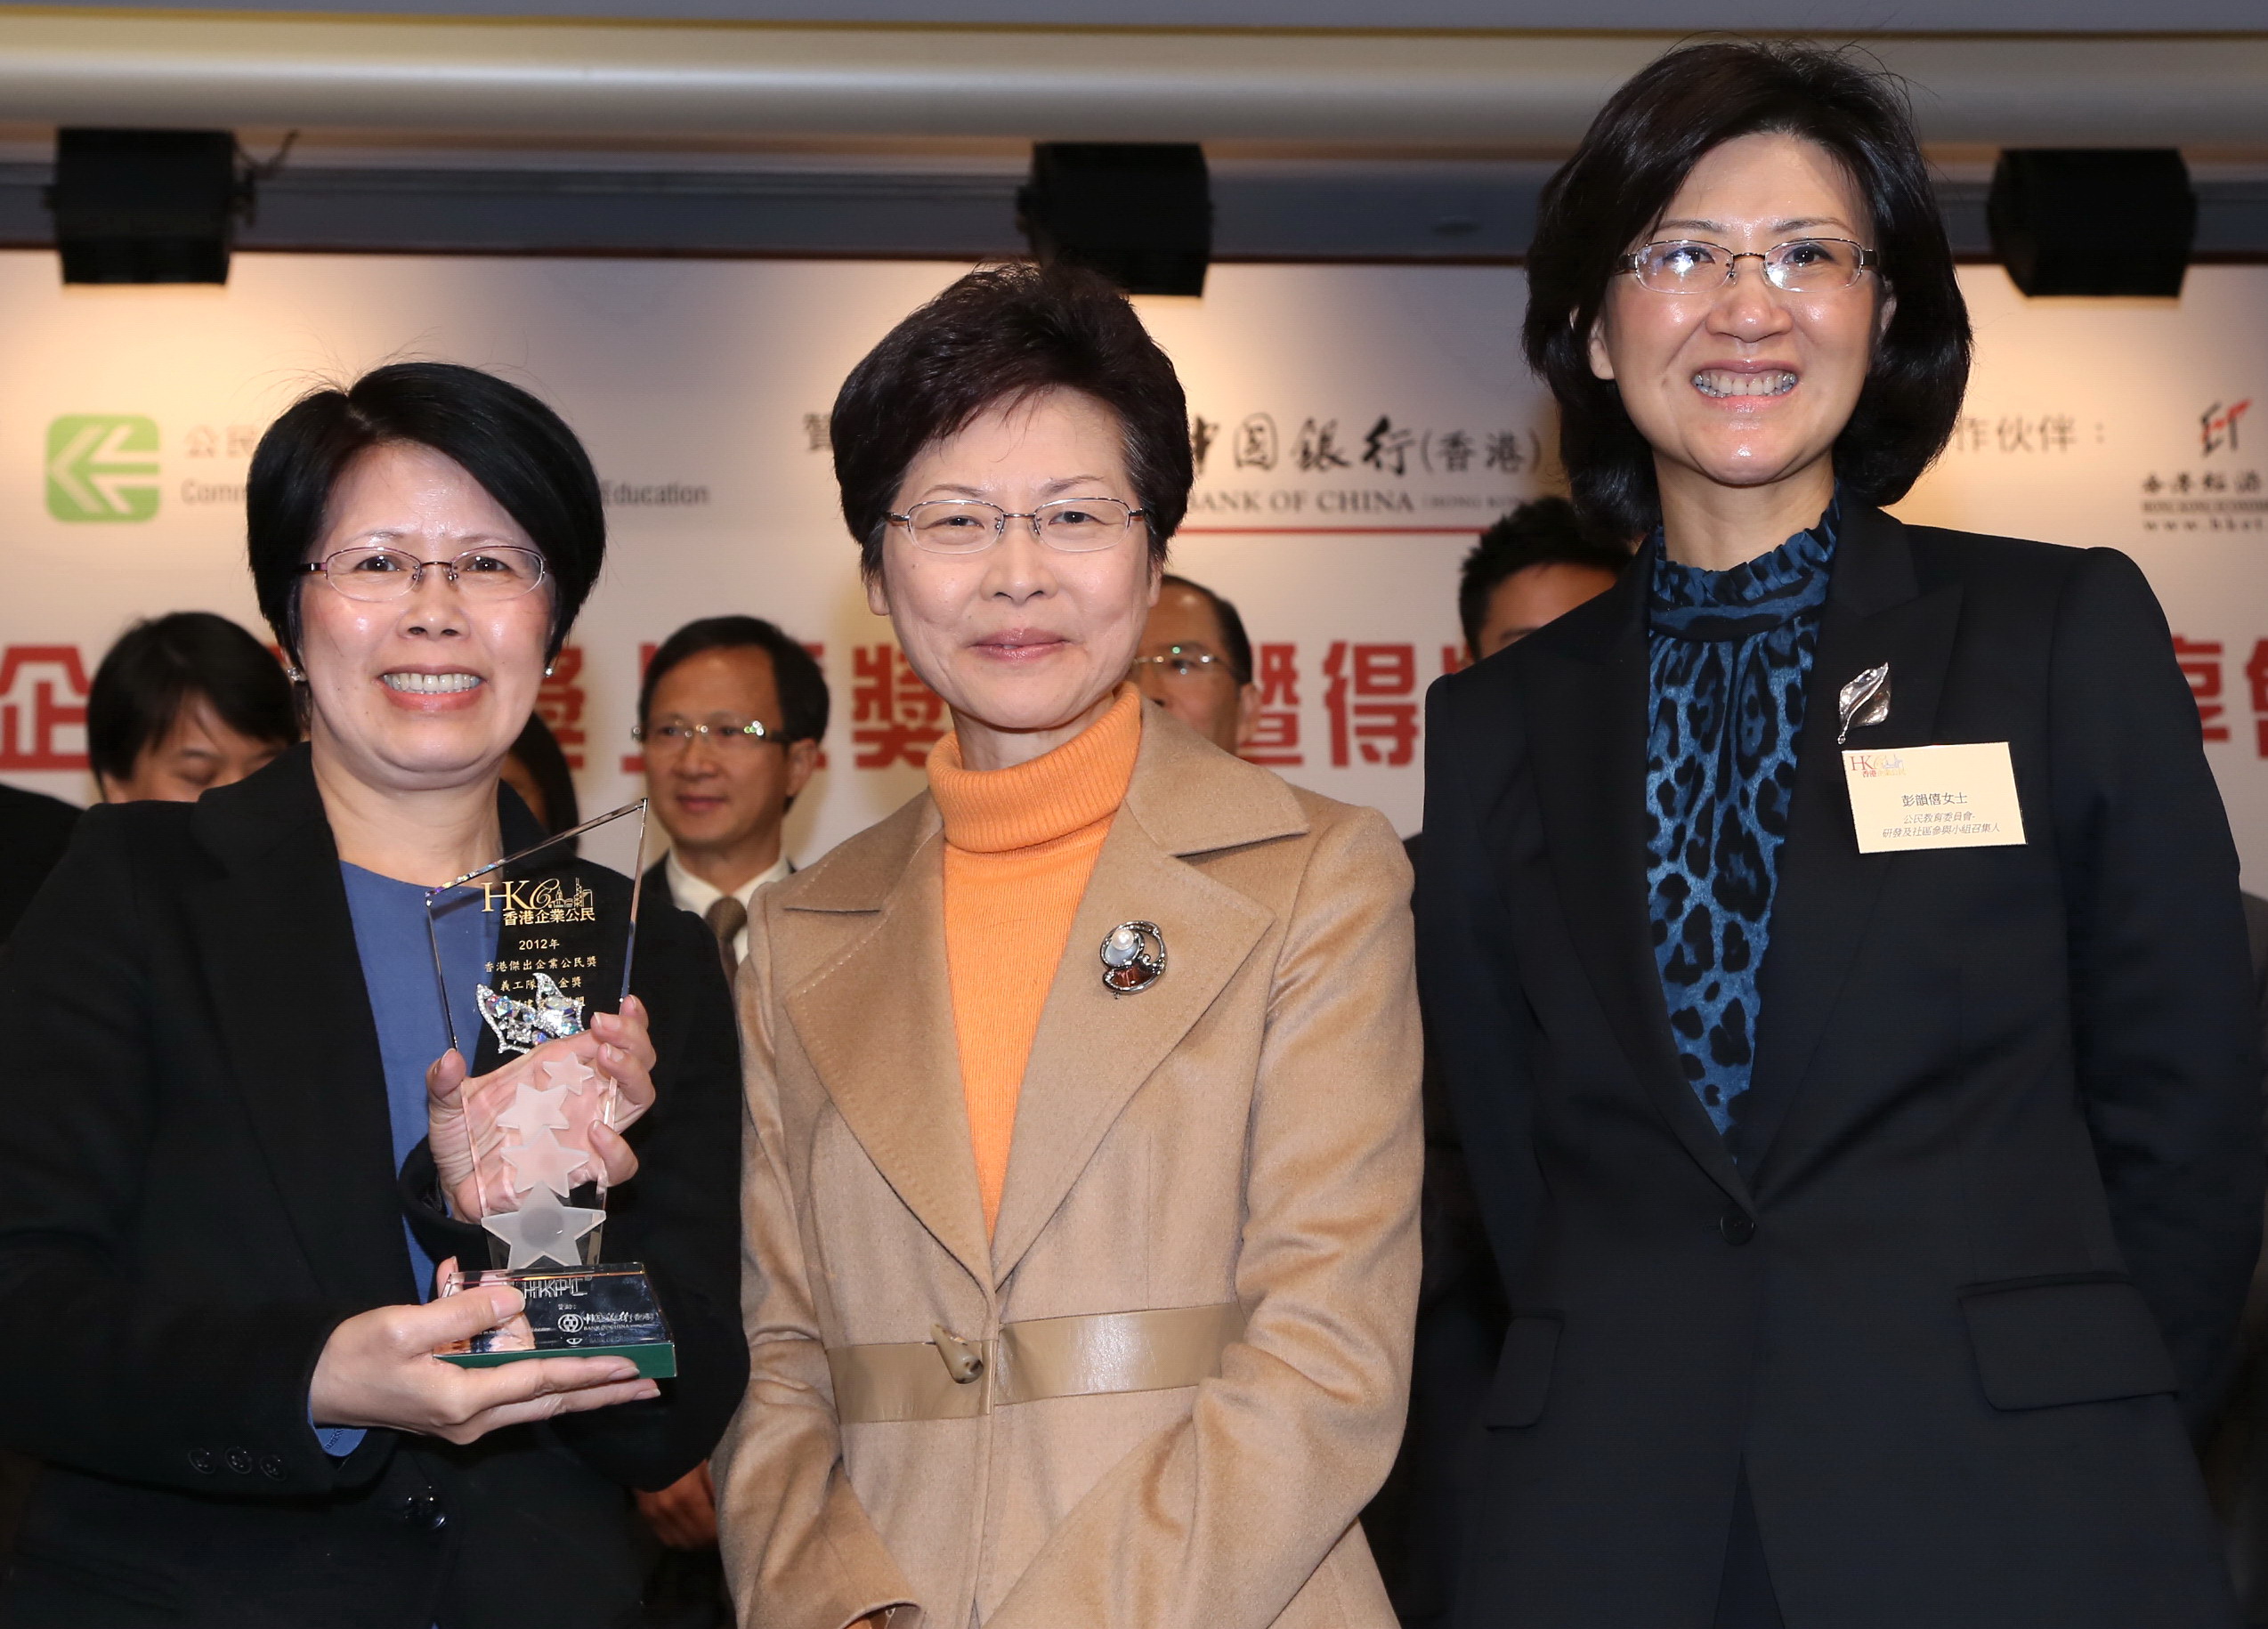 新创建集团义工队连续两年荣获「香港杰出企业公民奖」义工队组别金奖